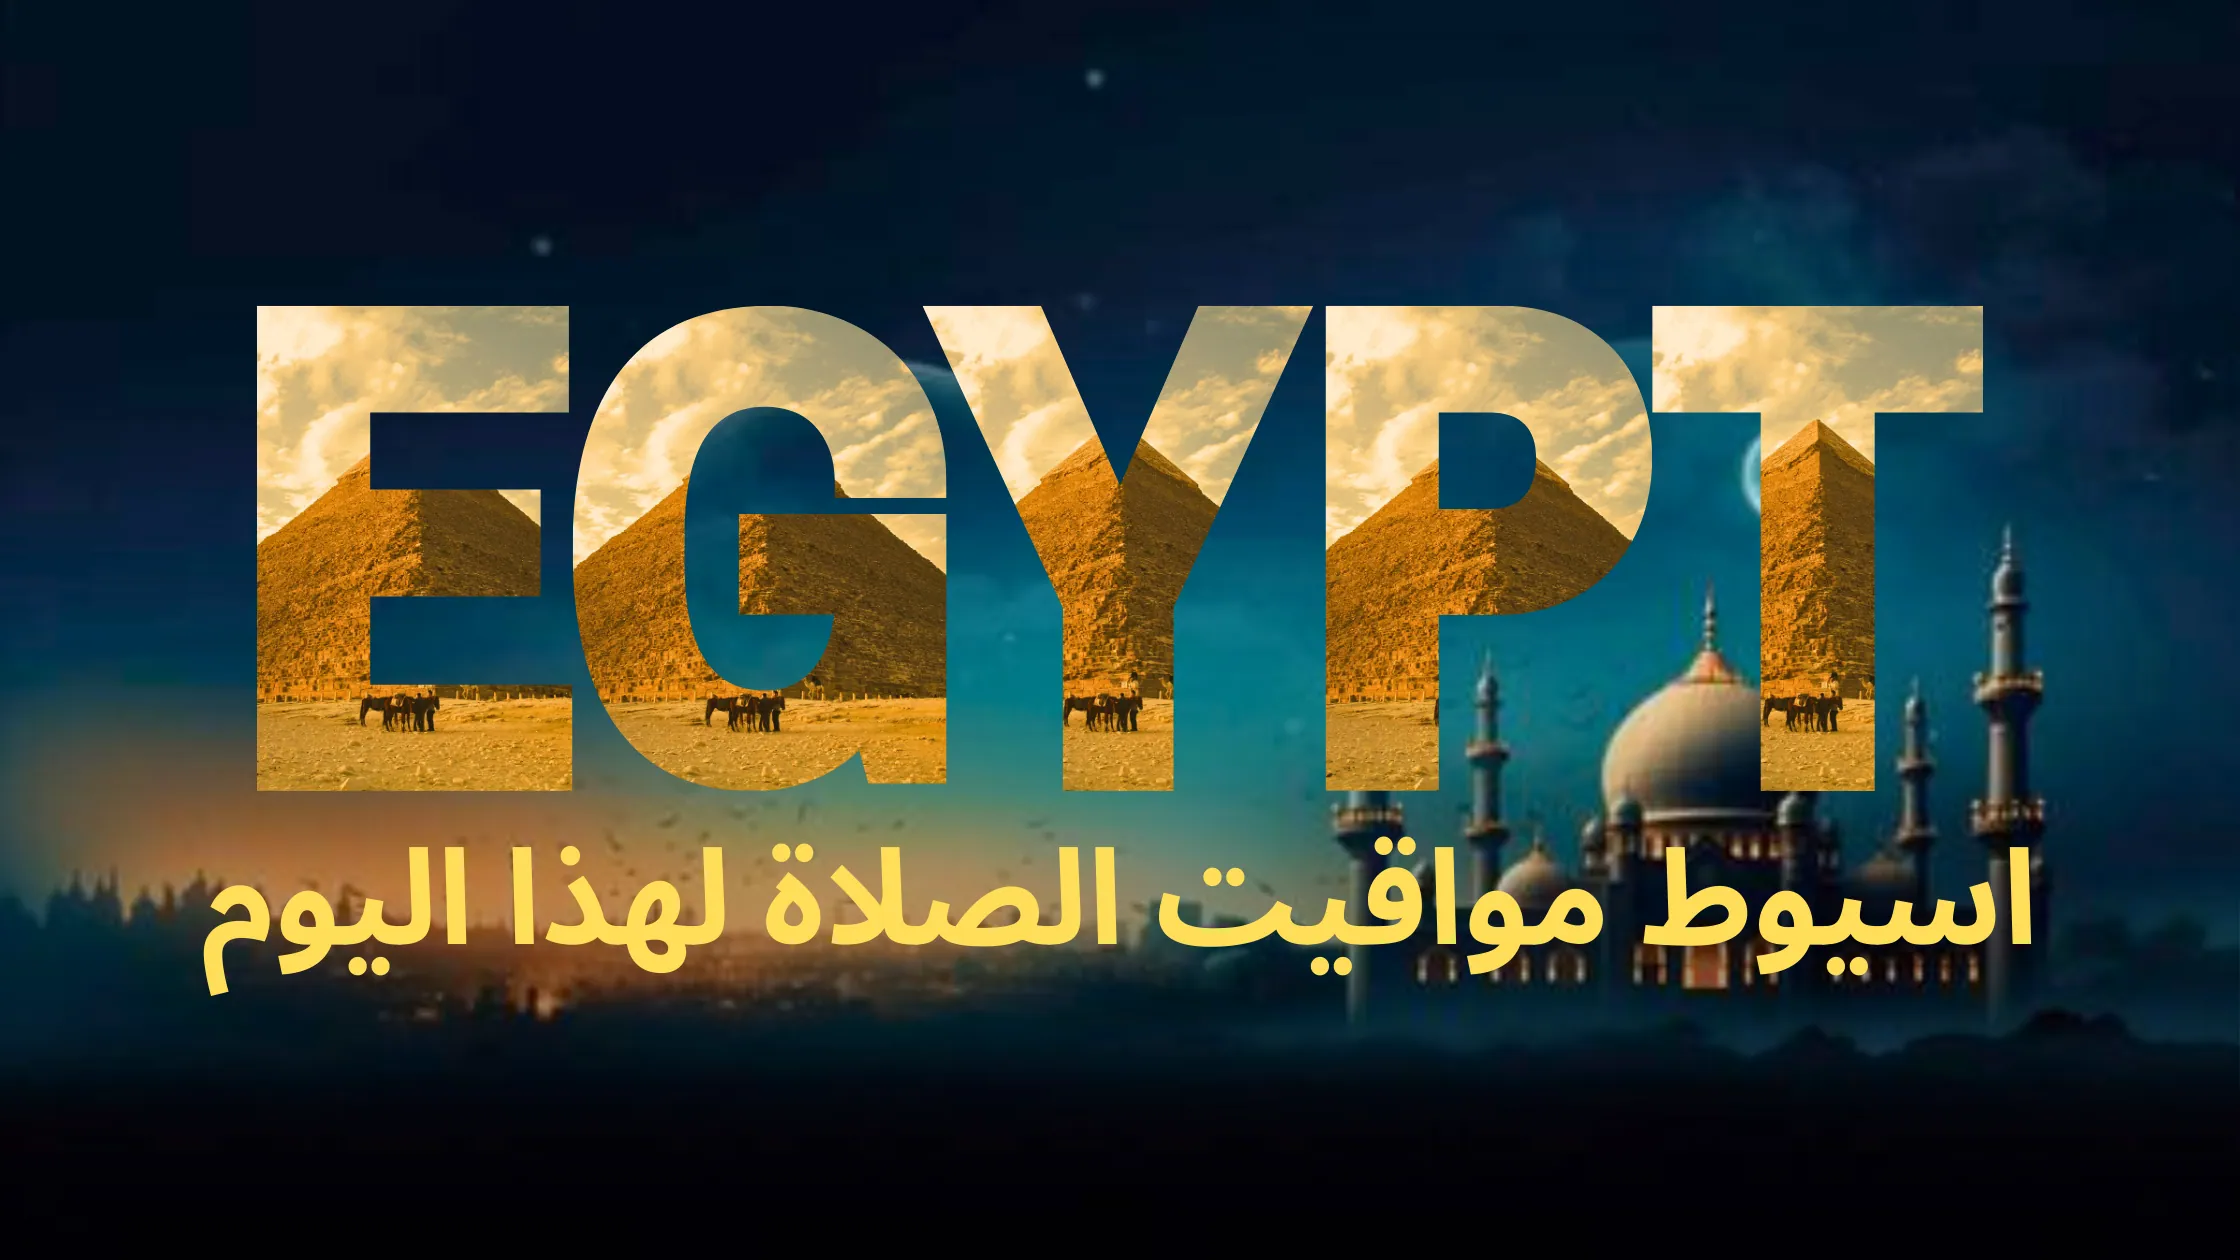 نص مكتوب بالخط العربي "مصر" متبوعًا بالنص العربي "اسيوط مواقيت الصلاة لهذا اليوم"